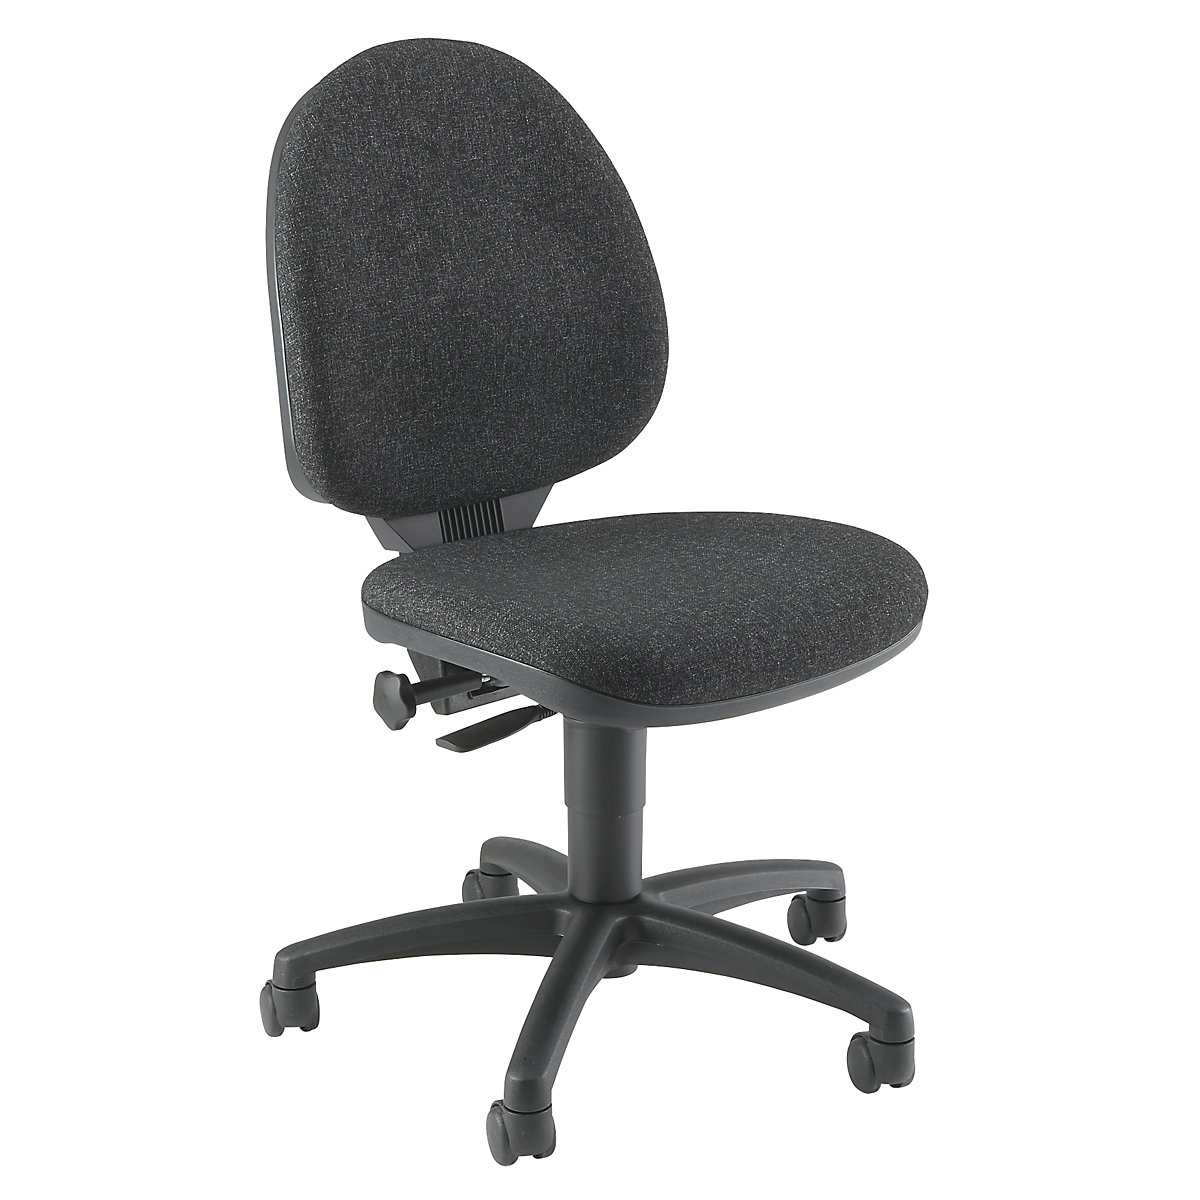 Standaarddraaistoel – Topstar, zonder armleuningen, textielbekleding antraciet / stoelframe zwart-4